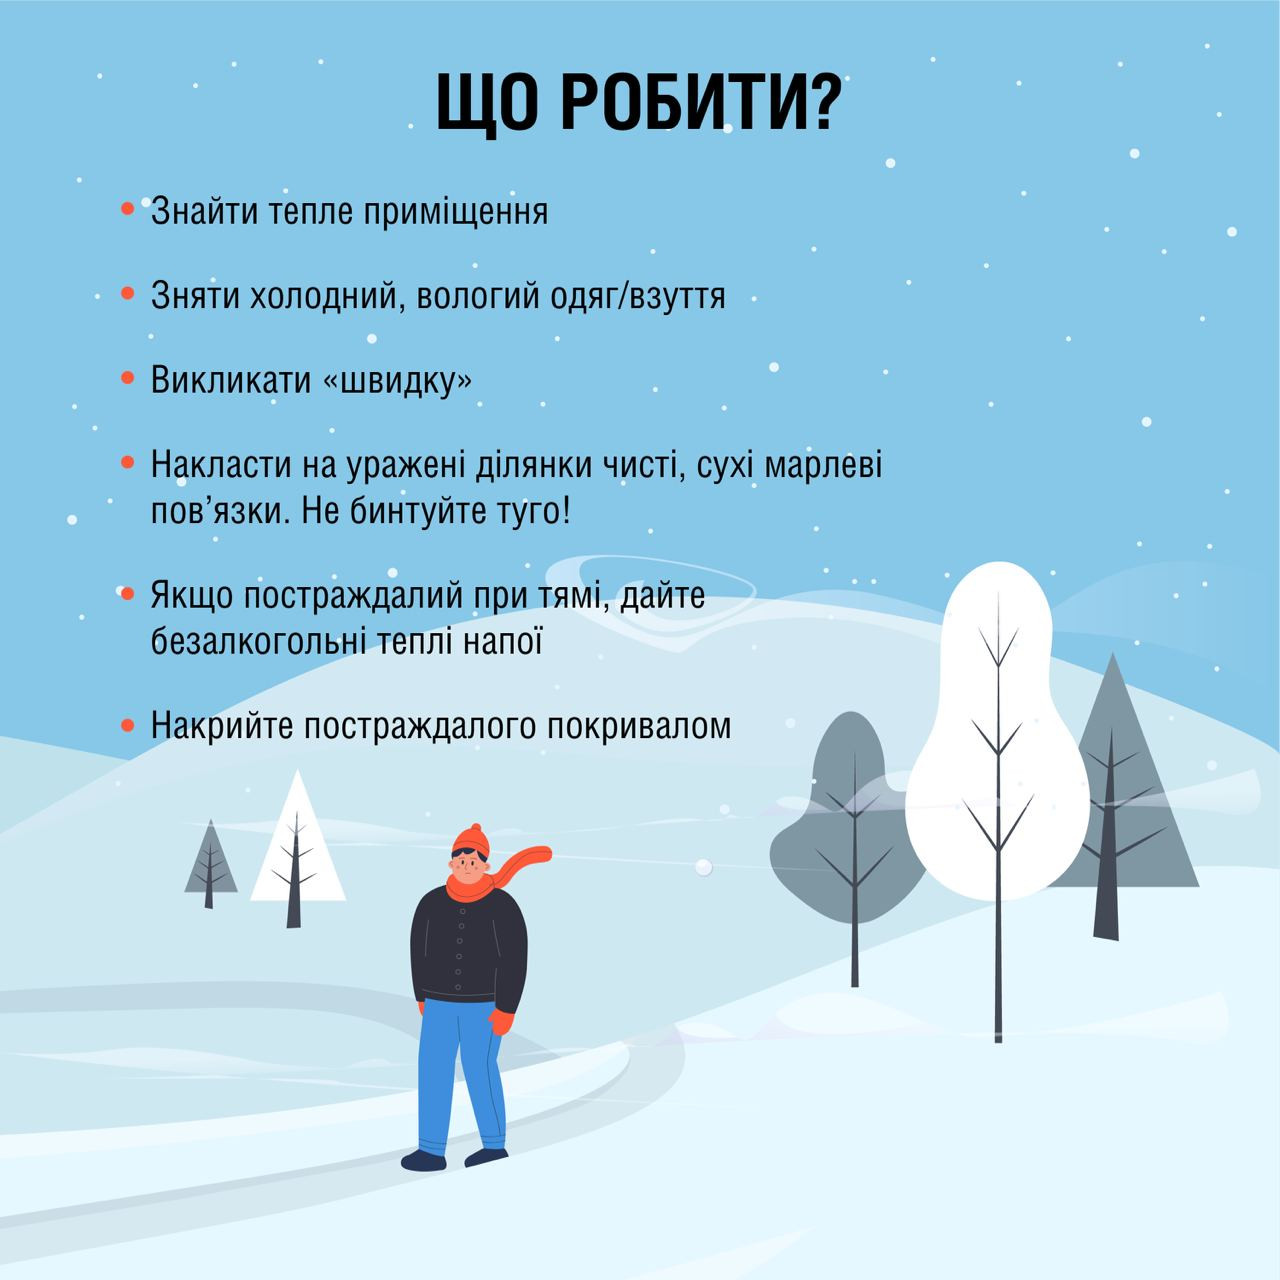 Ожеледиця, але без істотних опадів: прогноз погоди на Київщини на 14 грудня - 1 - зображення